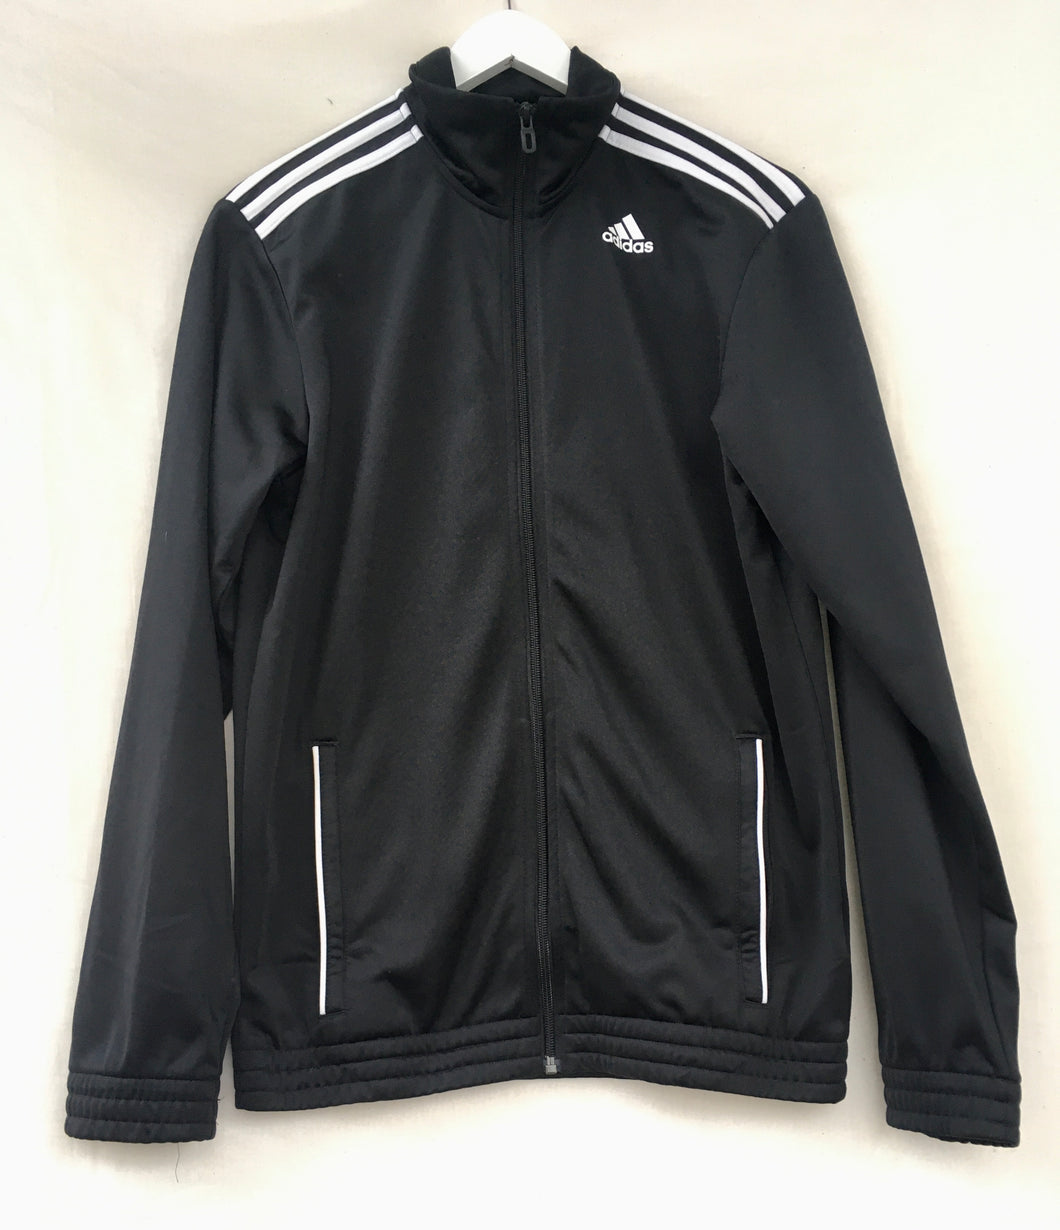 Black Adidas track jacket